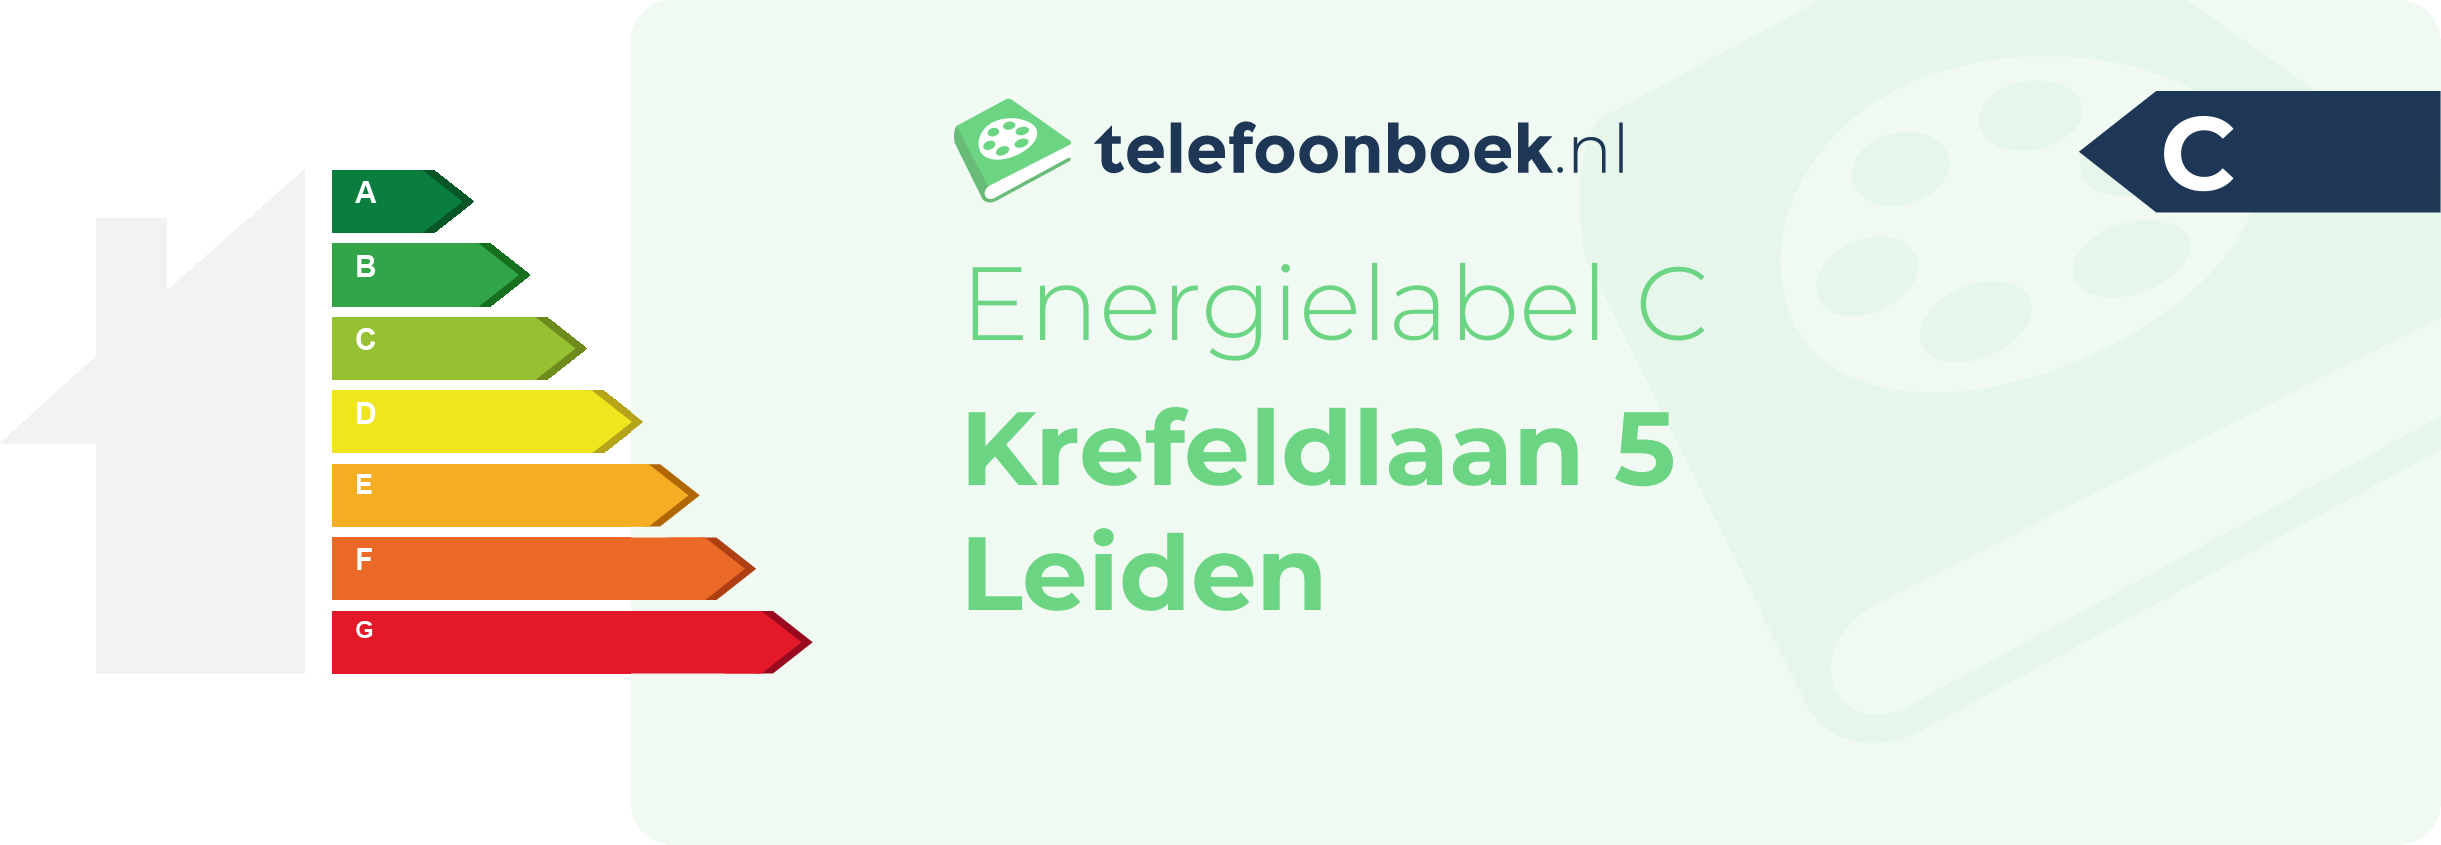 Energielabel Krefeldlaan 5 Leiden